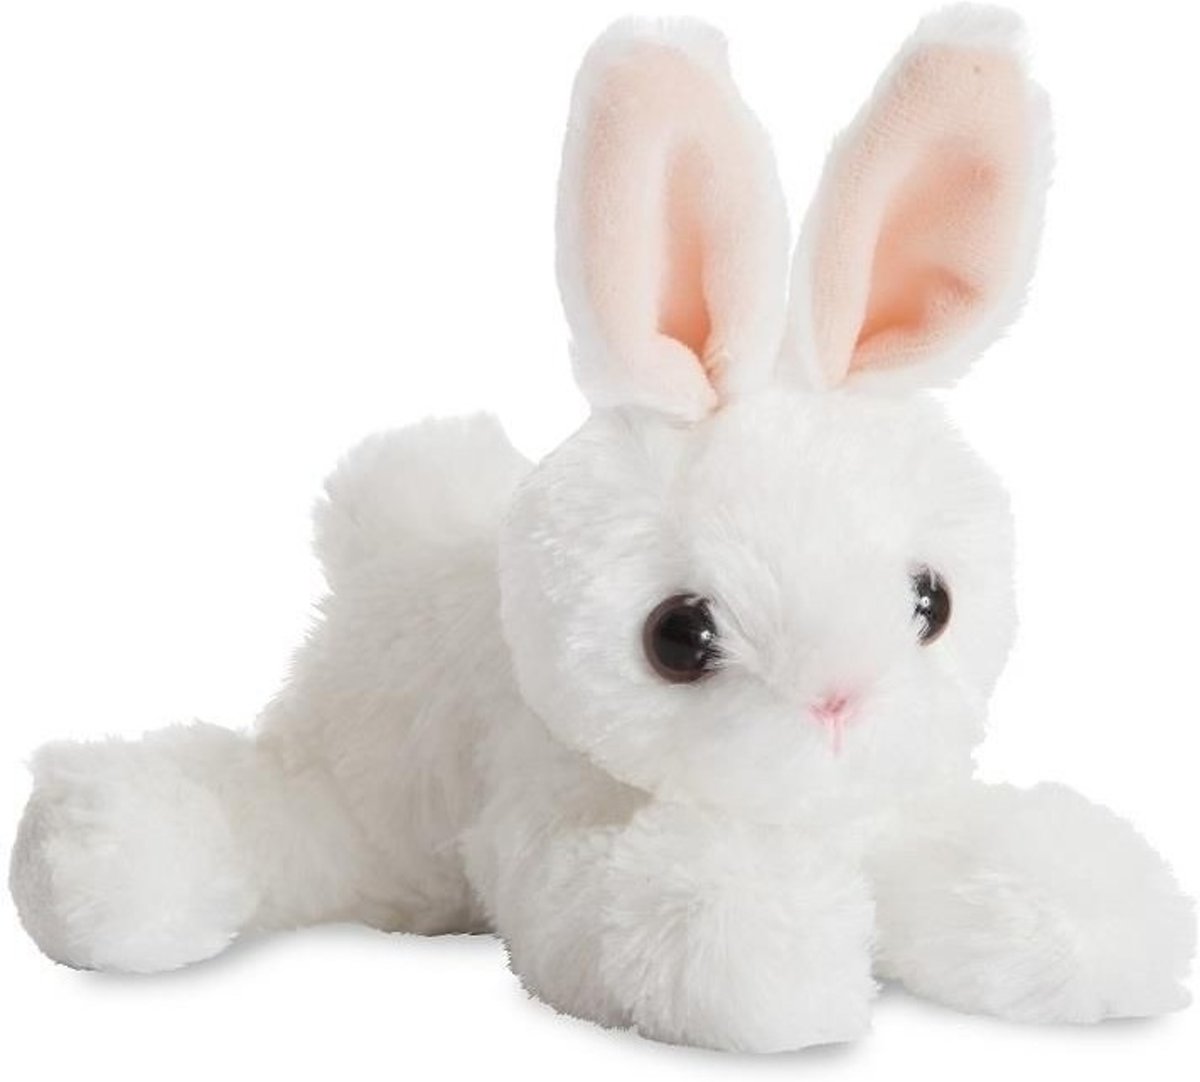 Pluche witte konijn/haas knuffel 20 cm - Konijnen/hazen bosdieren knuffels - Speelgoed voor peuters/kinderen